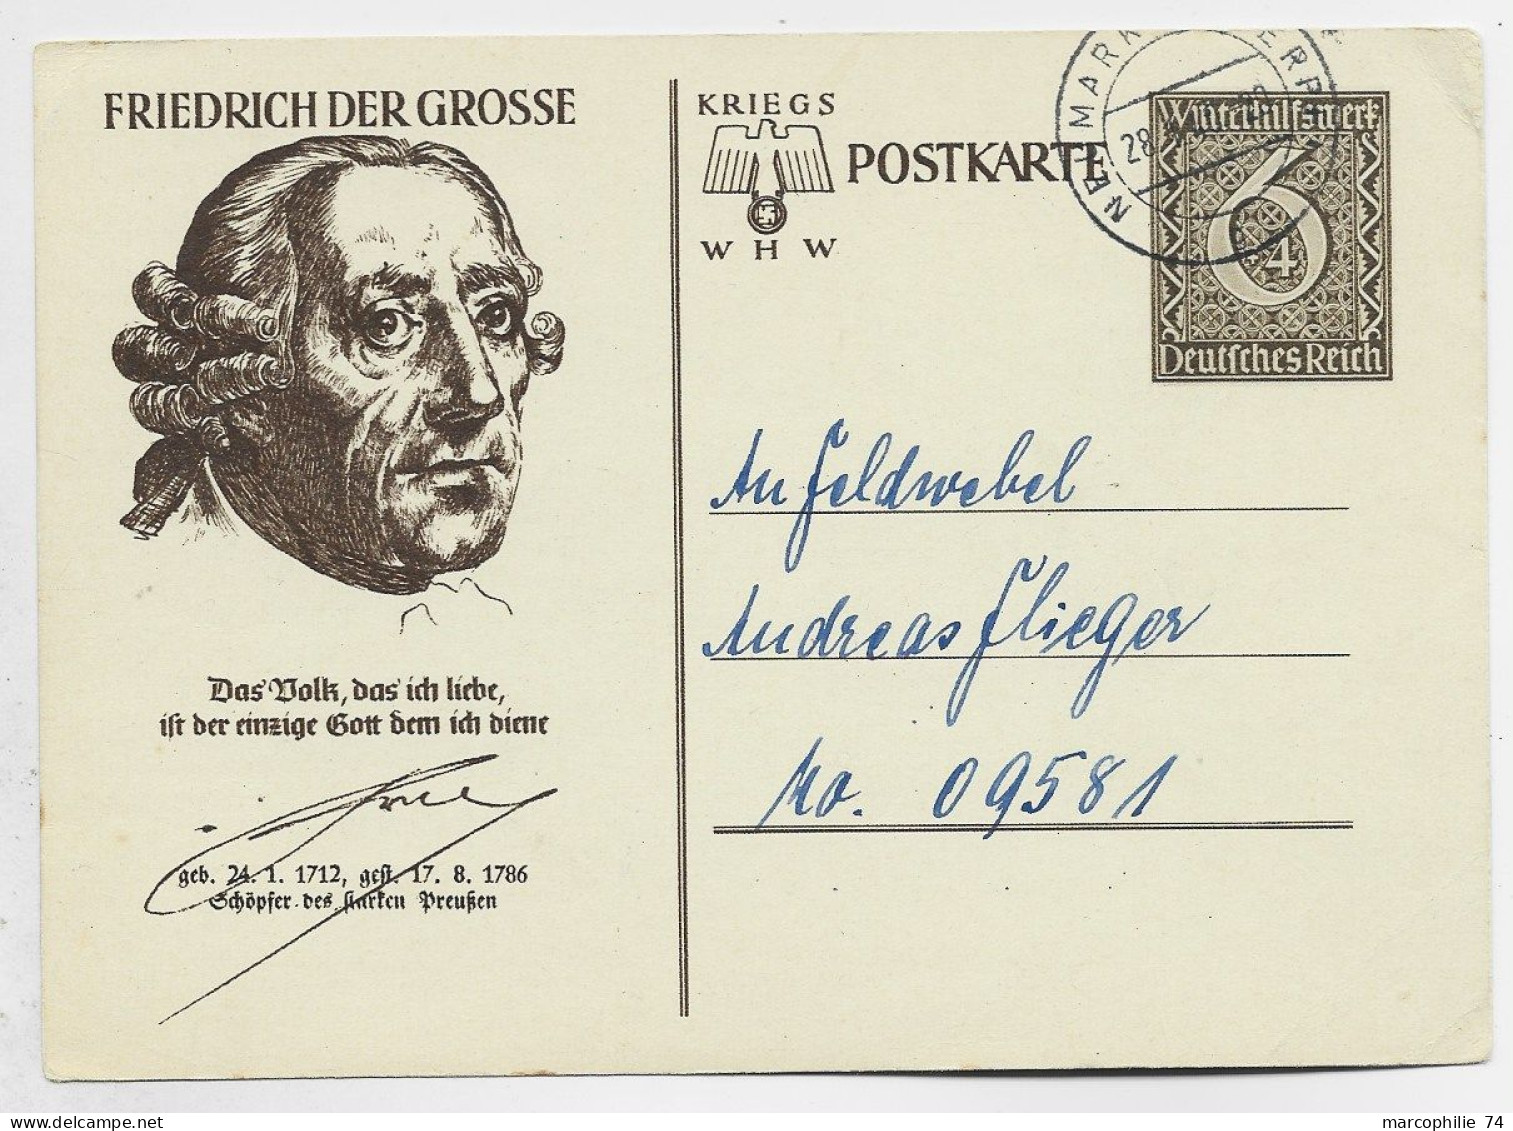 GERMANY REICH ENTIER 6C POSTKARTE FRIEDRICH GROSSE 28.1.1940 TO N°09581 - Tarjetas